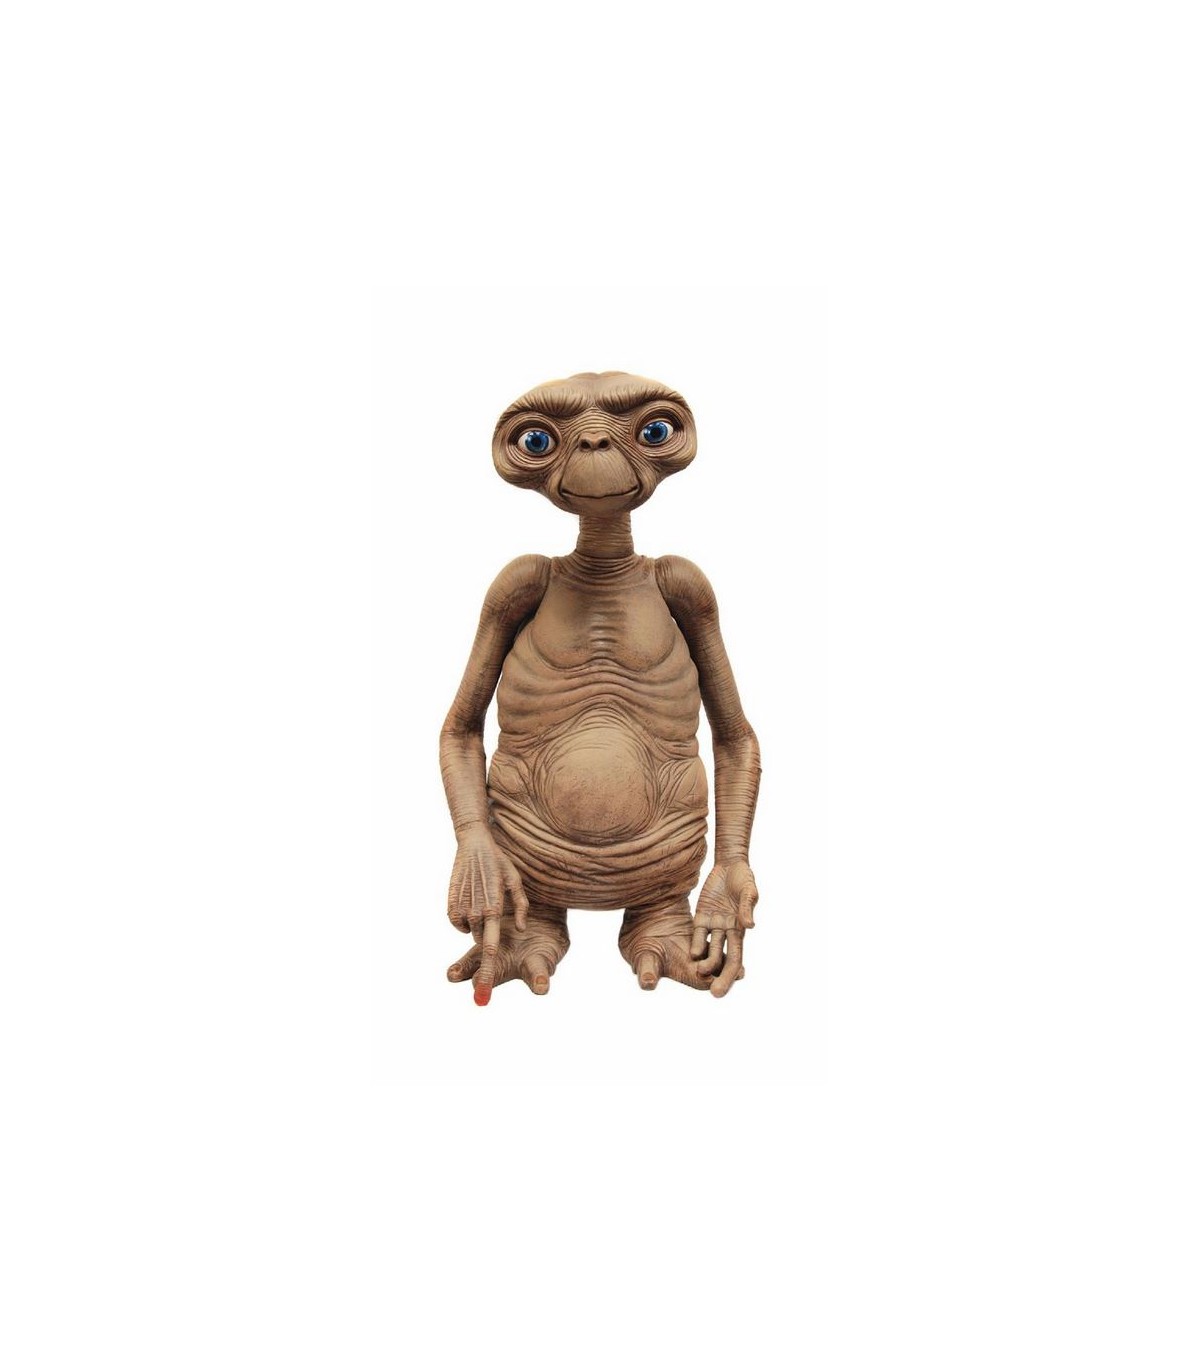 Las versiones más cutres de 'E.T. El extraterrestre